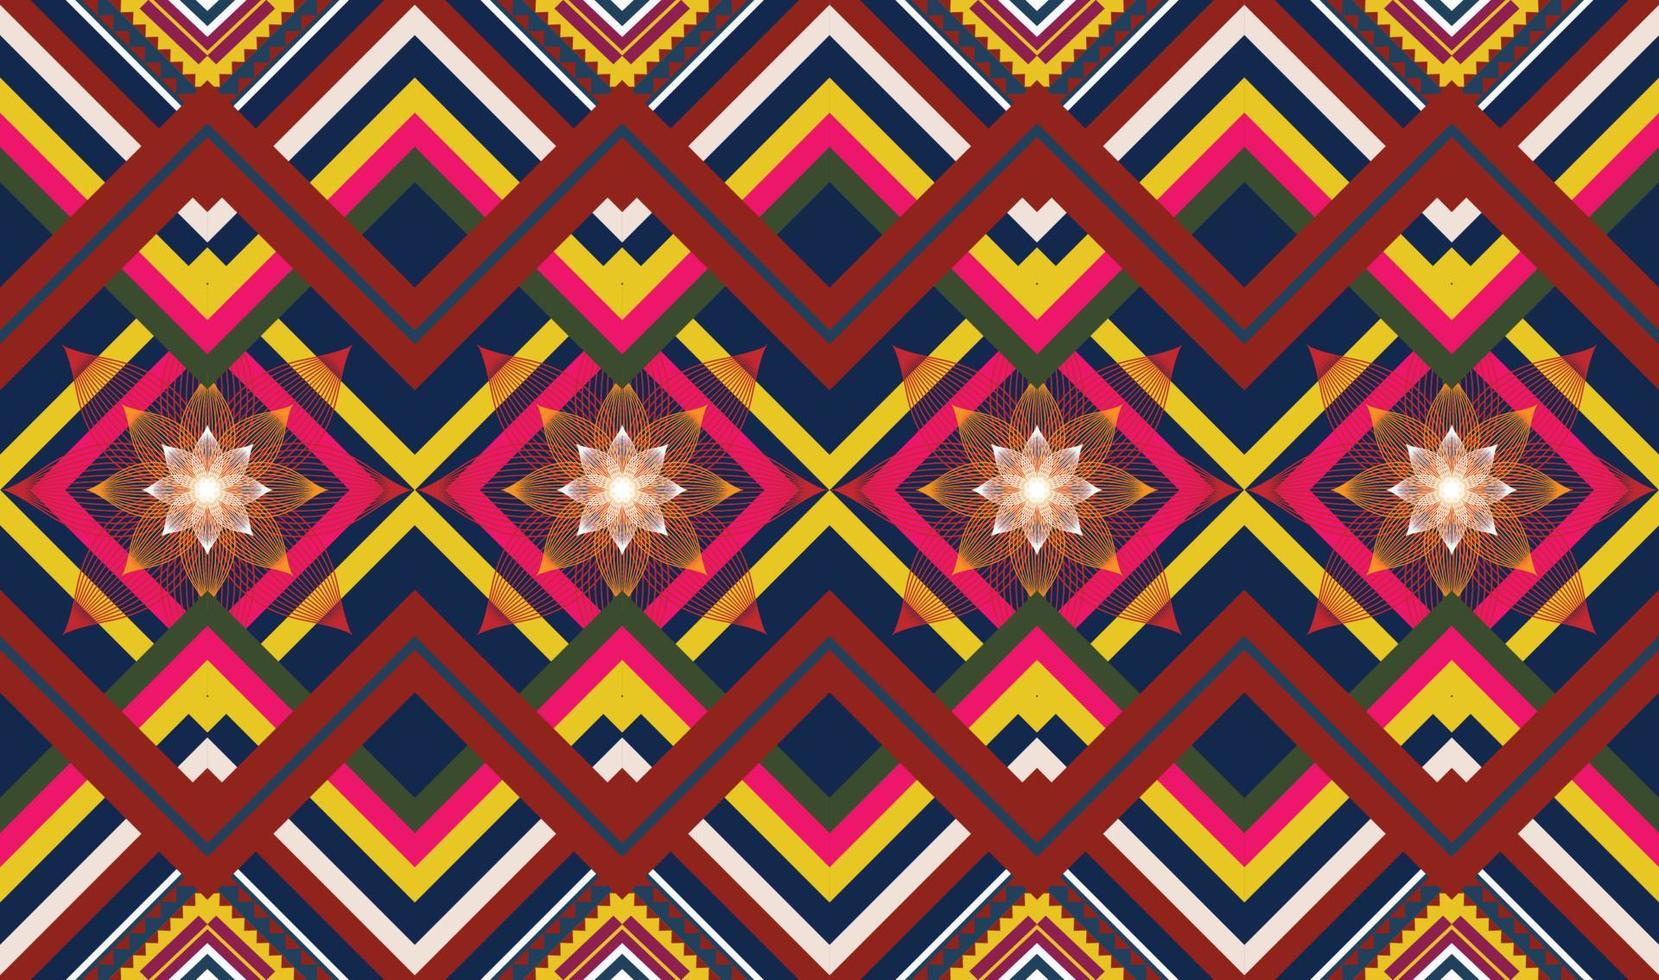 patrón étnico geométrico oriental transparente para fondo o papel tapiz. diseño de cortina de piso de alfombra vector